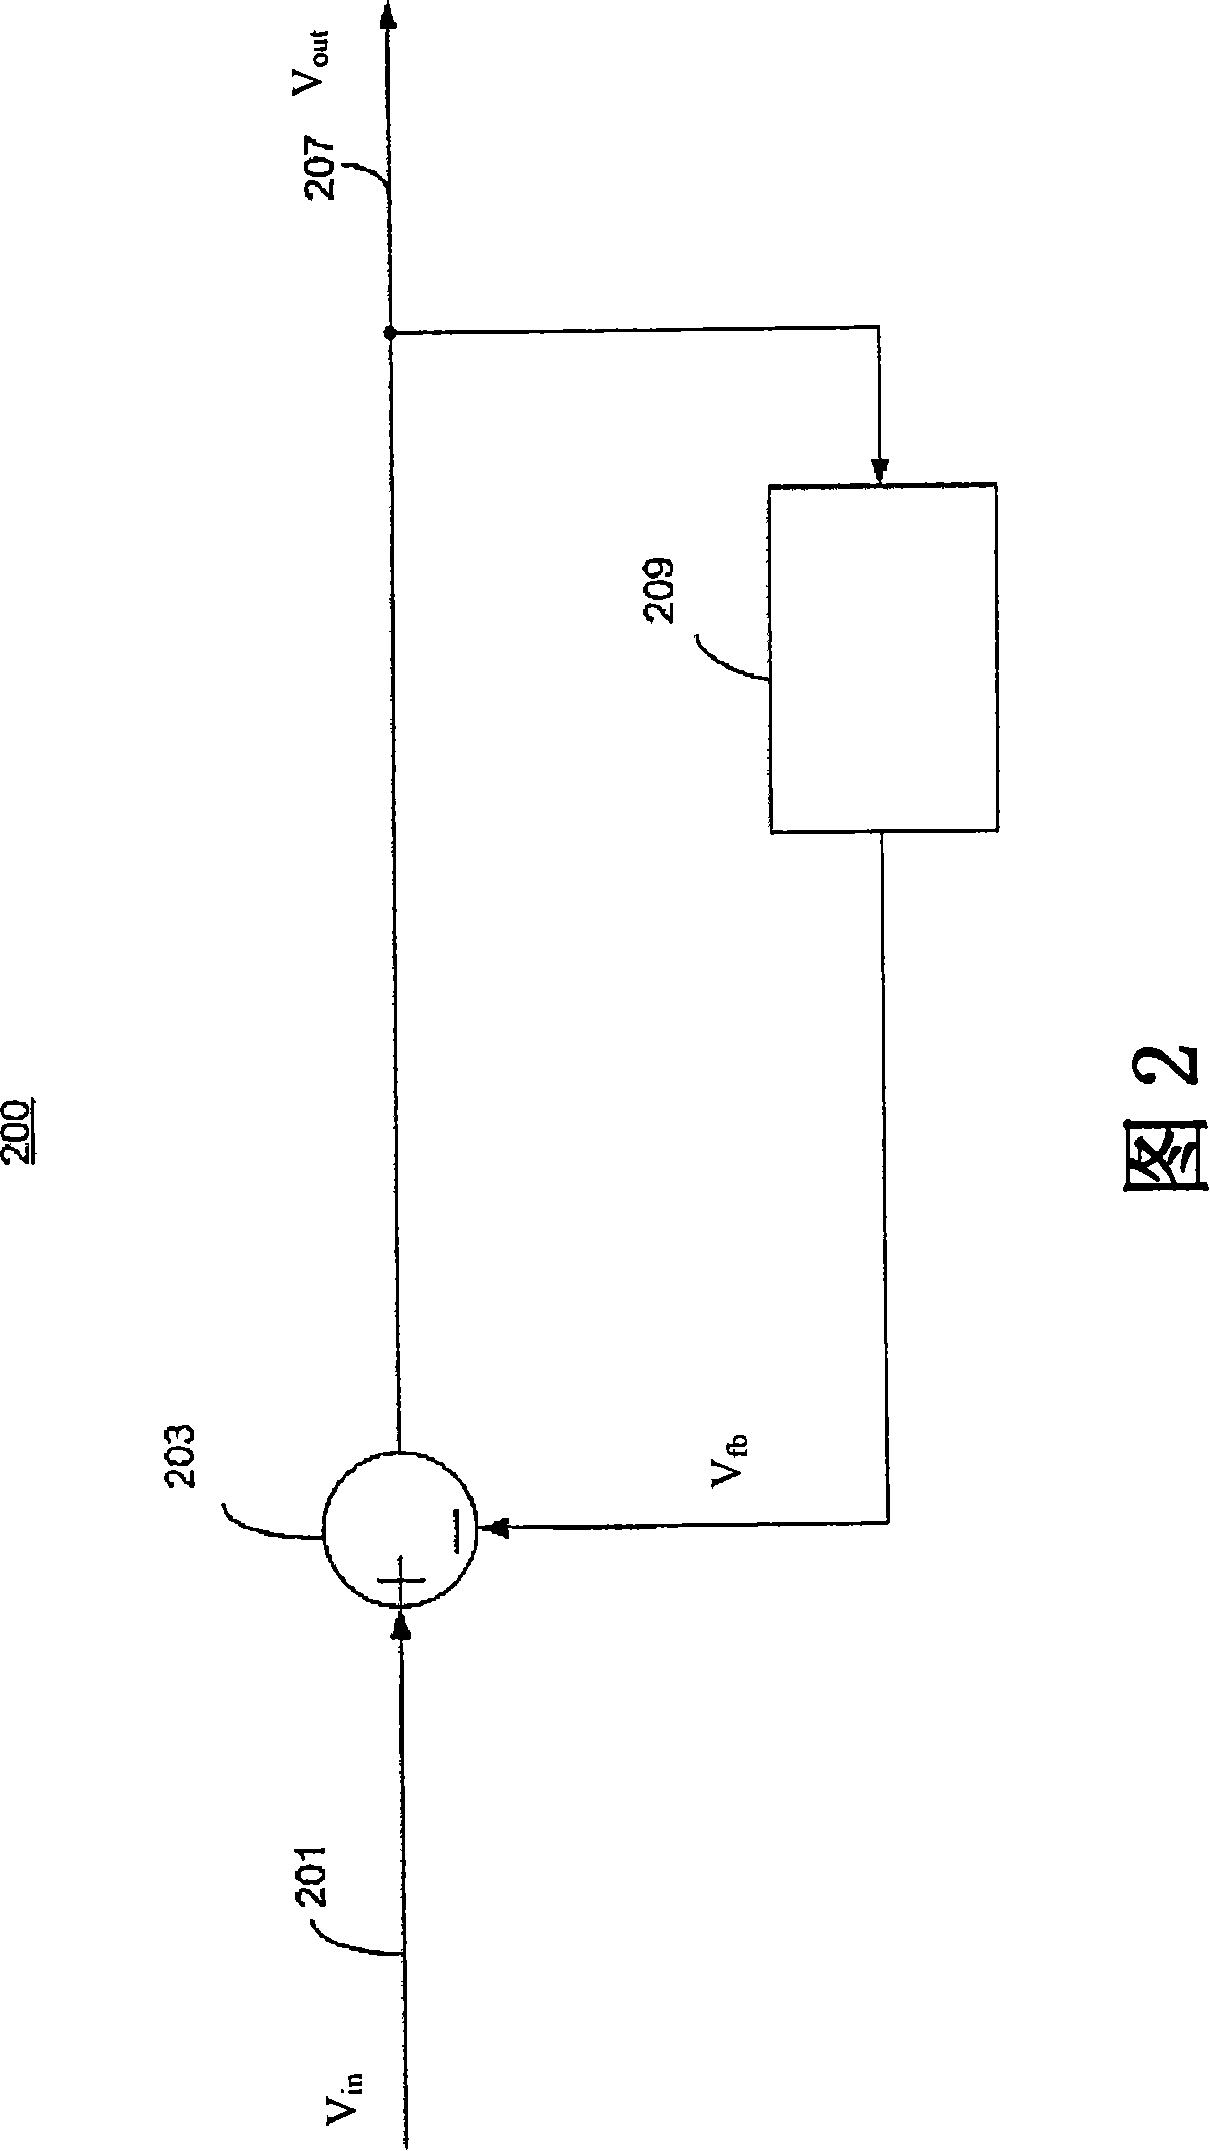 Servo loop circuit